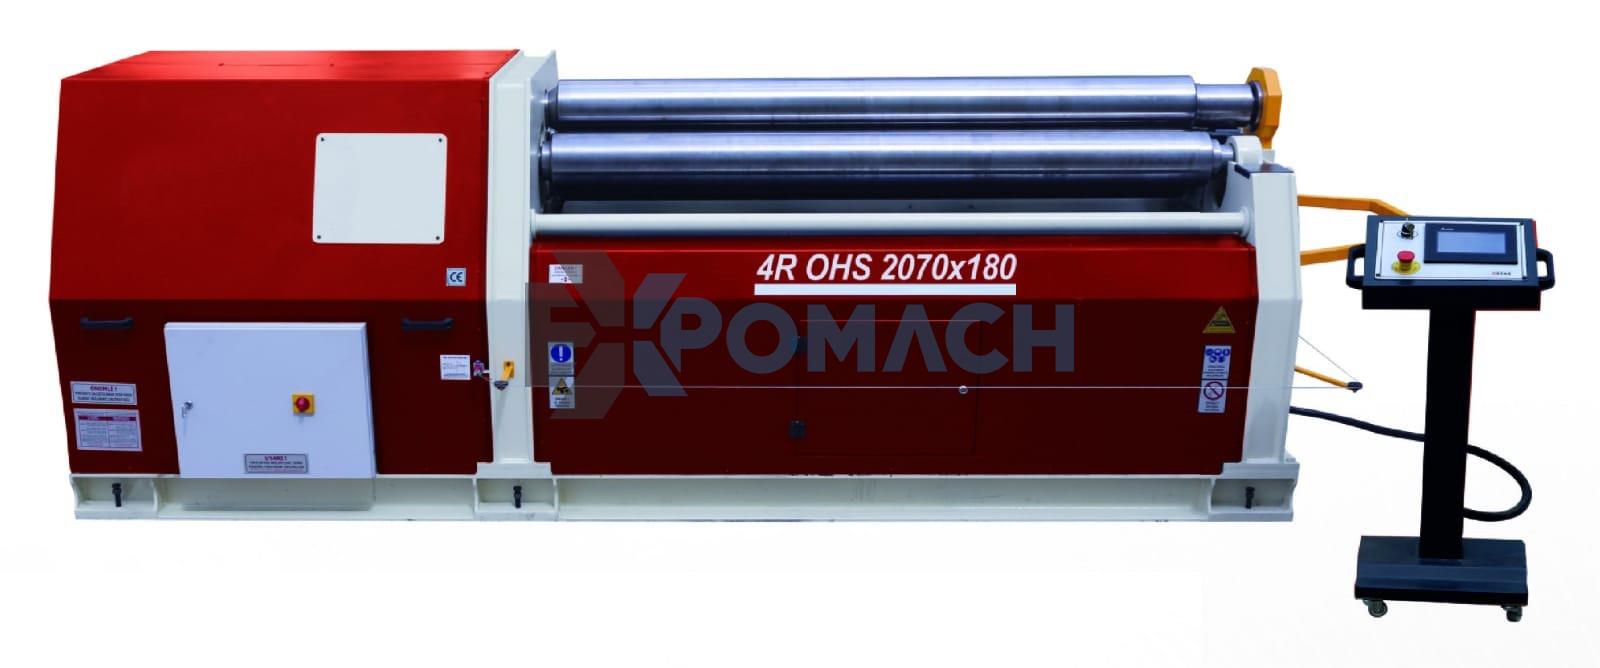 2070 x 180 x 4 Toplu Hidrolik Silindir Makinası - 4 batch Hydraulic cylinder